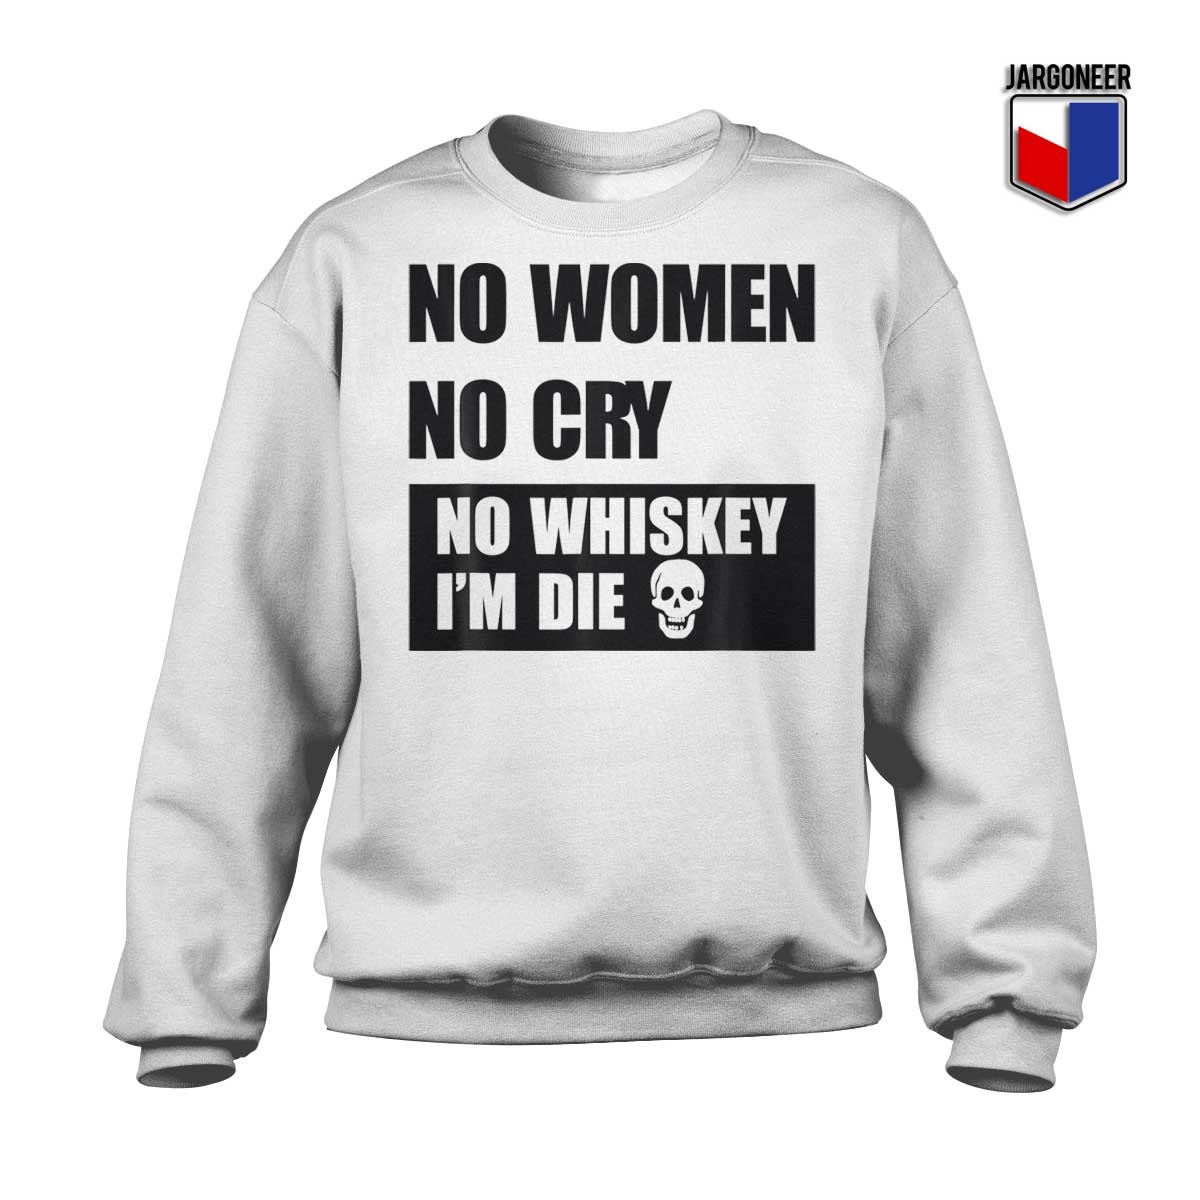 No Women No Cry No Whiskey Im Die White Sweatshirt - Shop Unique Graphic Cool Shirt Designs